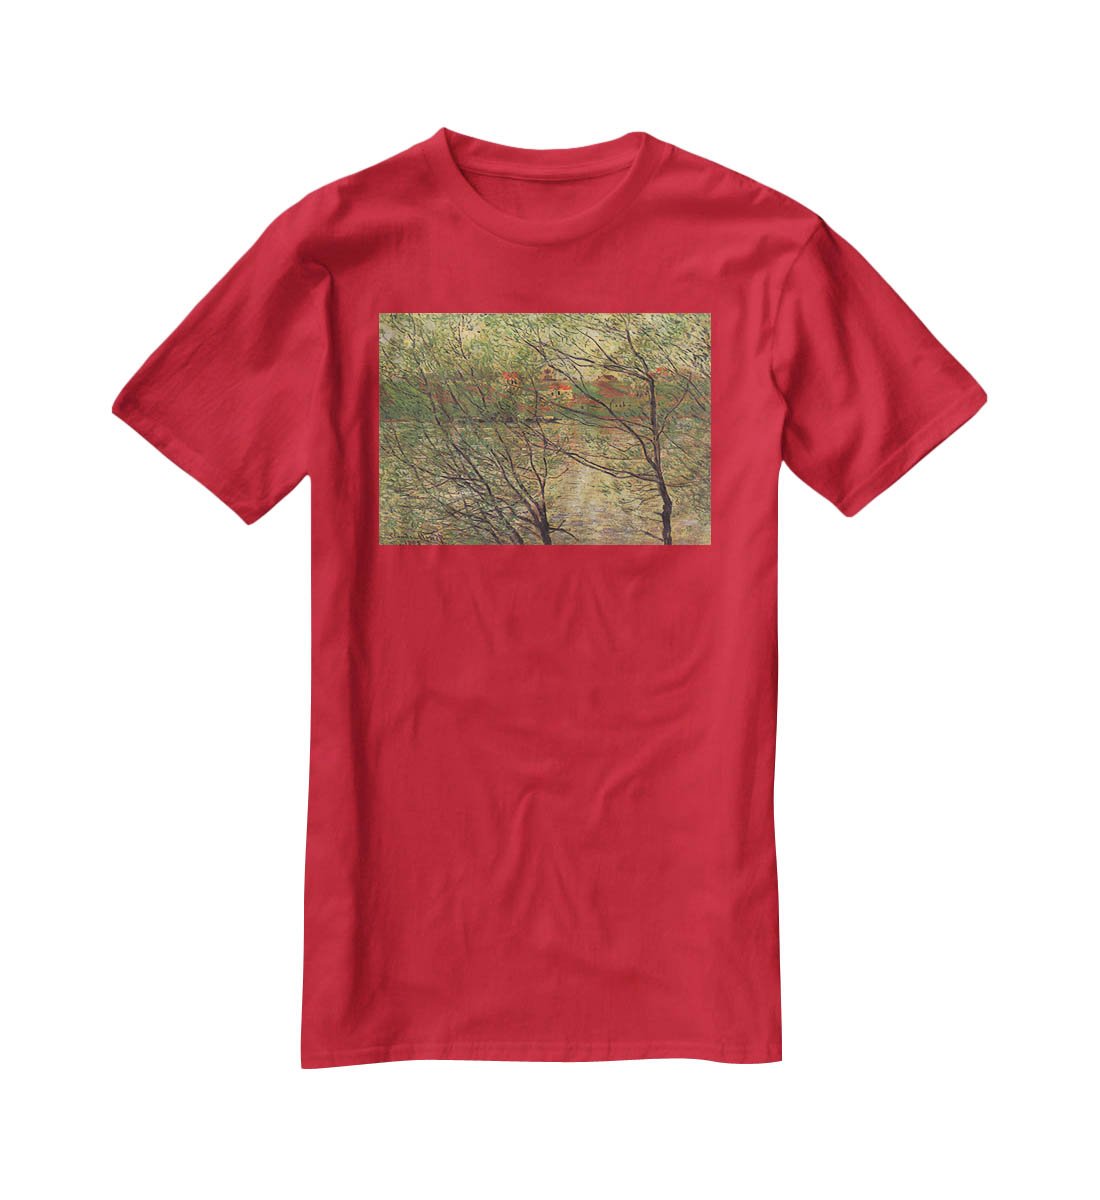 His bank the Ile de la Grande Jatte by Monet T-Shirt - Canvas Art Rocks - 4